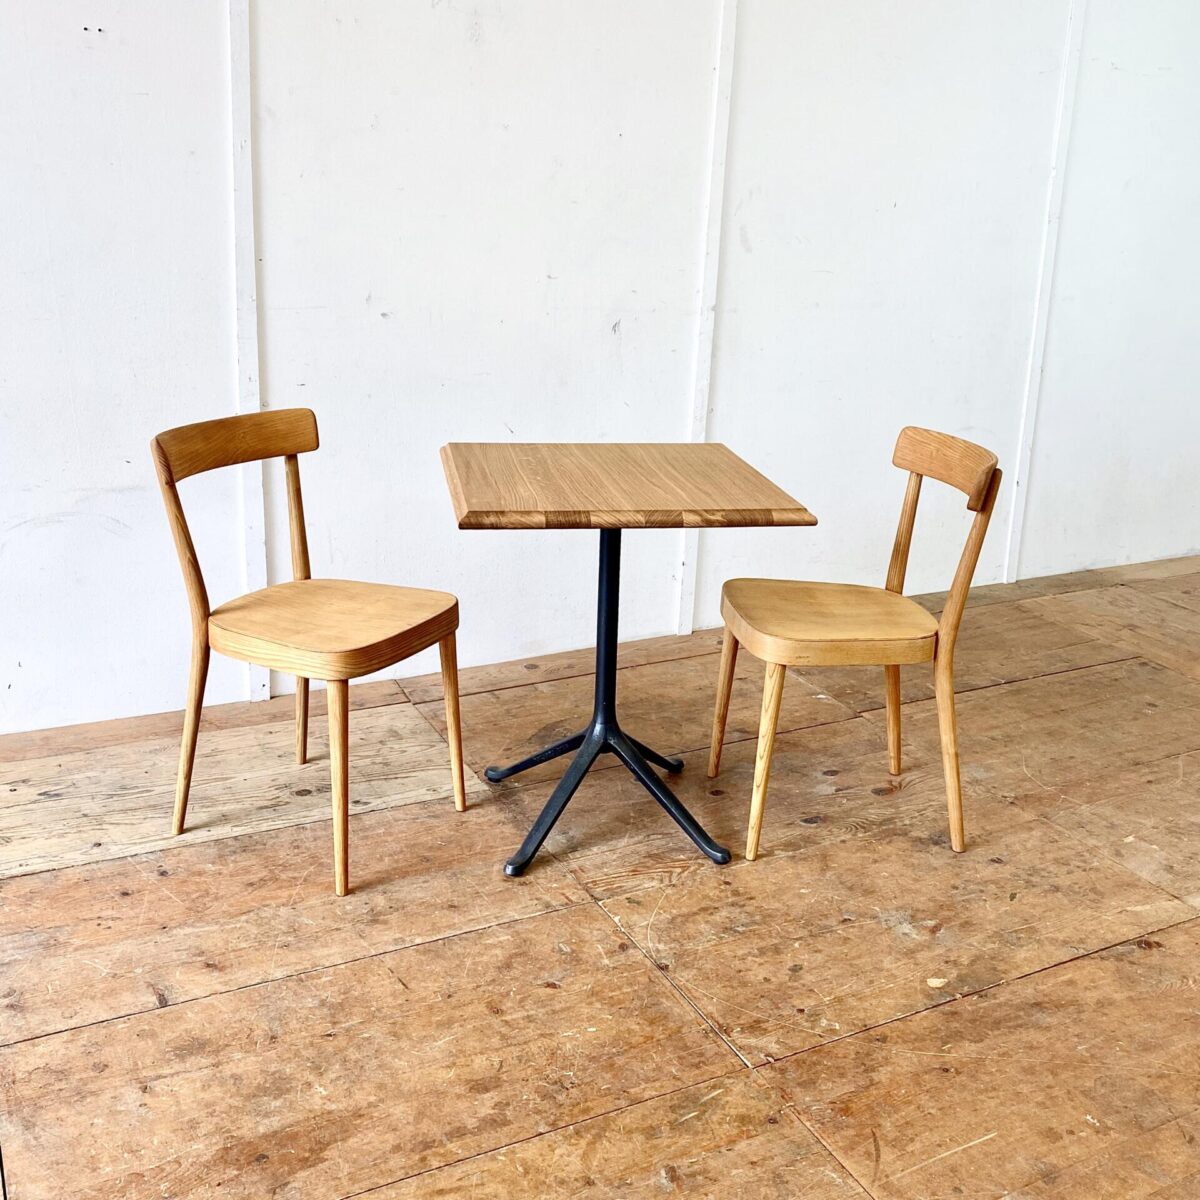 Zwei horgenglarus Stühle von Max Moser aus Eschenholz. Die Stühle sind stabil, Vorderbeine teilweise frisch eingeleimt. Komplett geschliffen und Natur geölt. Warm-matte honiggelbe Ausstrahlung, mit Alterspatina. 